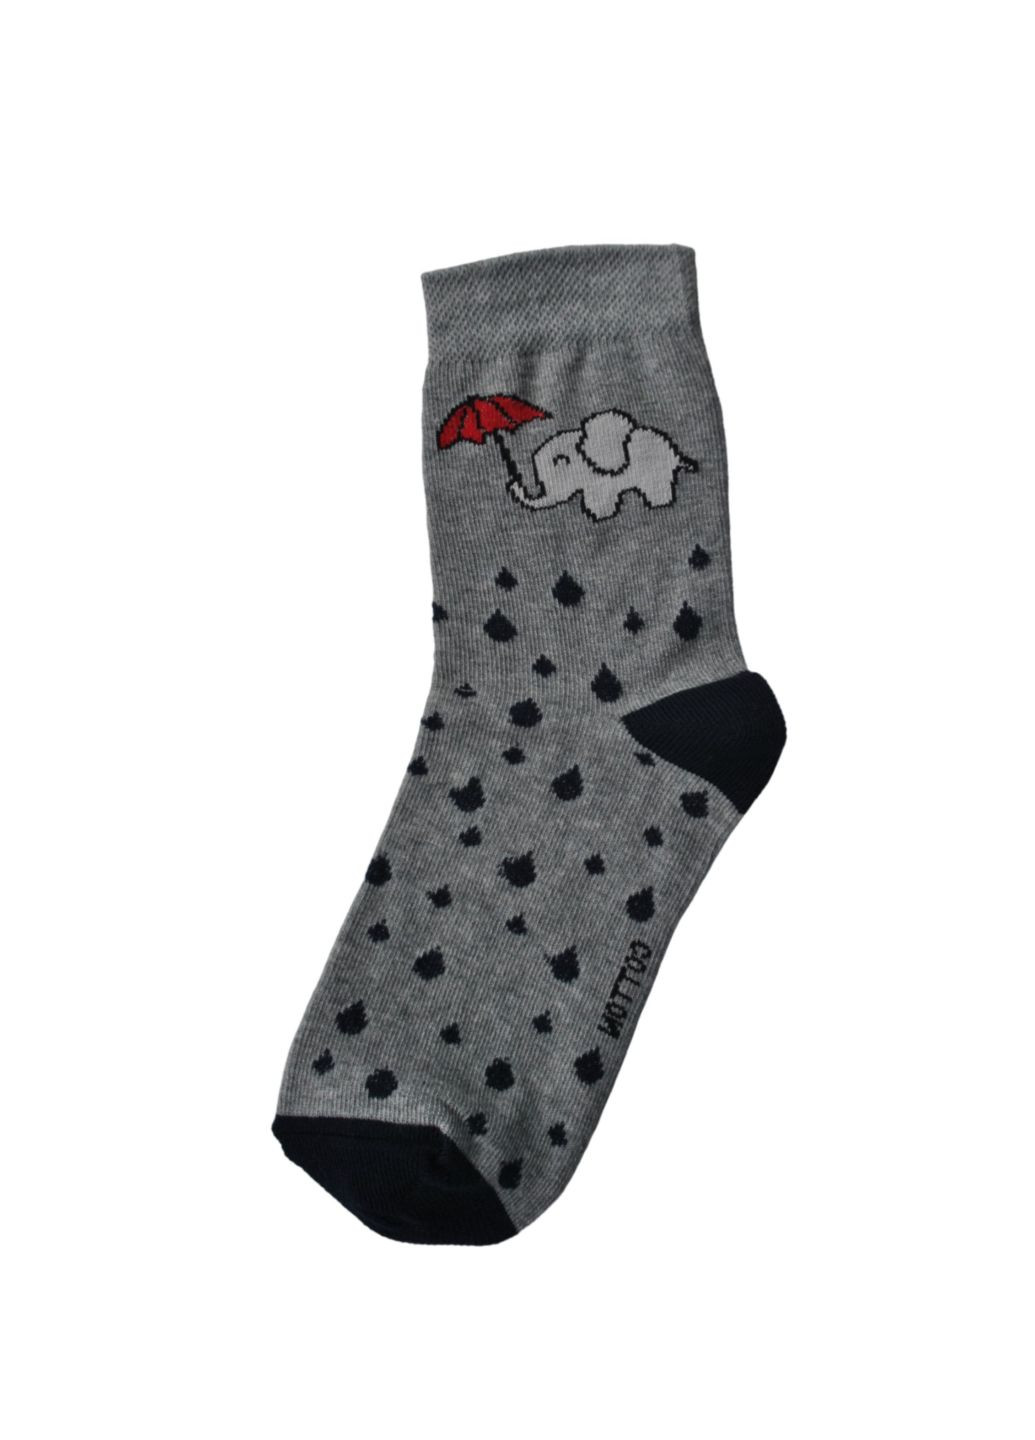 RFT Шкарпетки жіночі високі. Набір (3 шт.) Siela rt1312-052_набори (260063071)